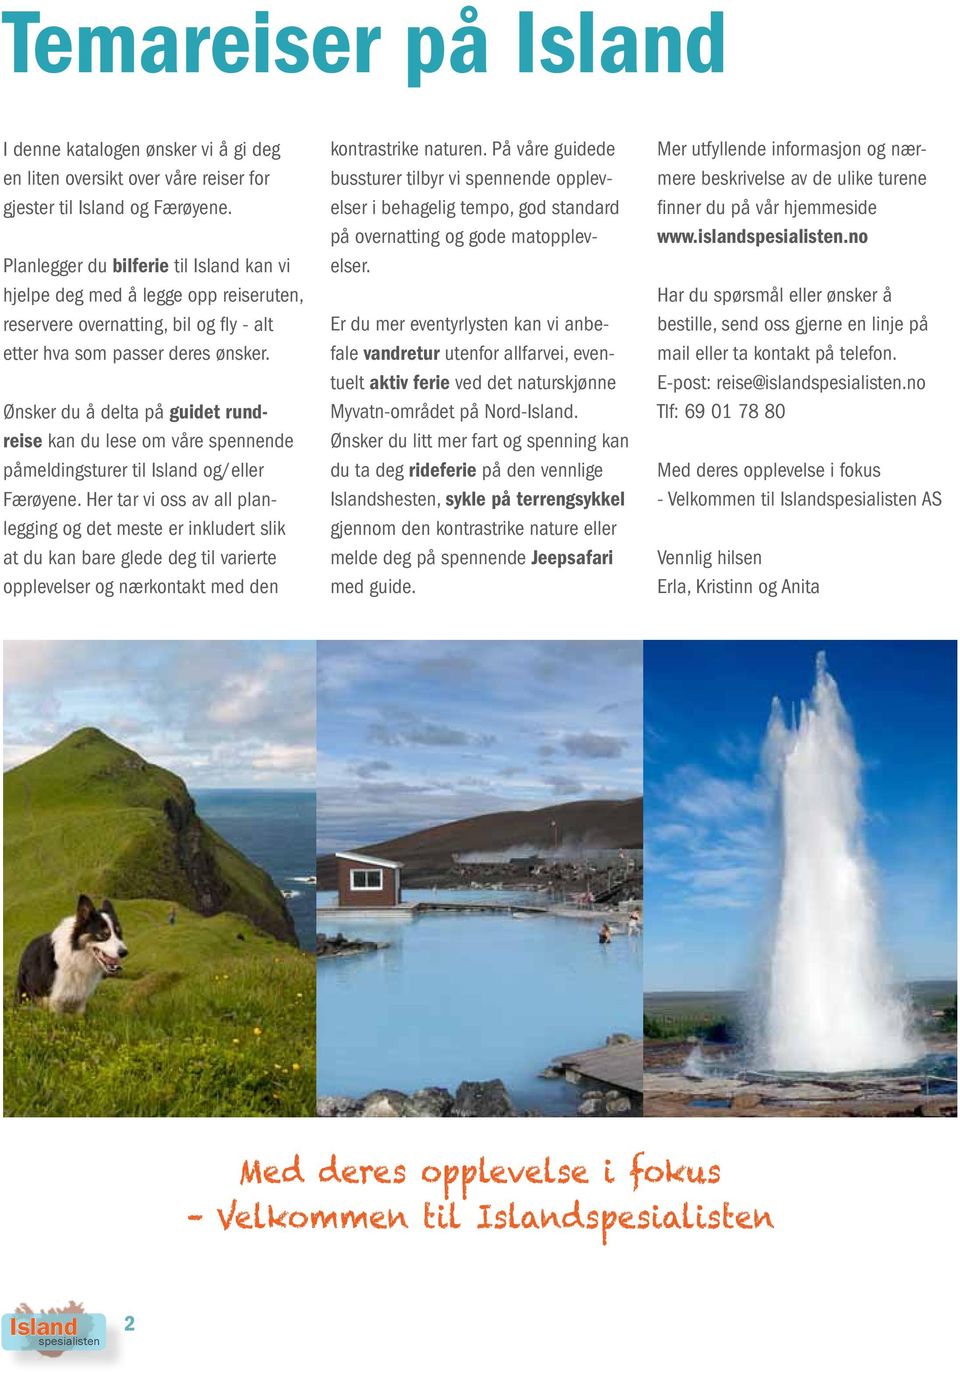 Ønsker du å delta på guidet rundreise kan du lese om våre spennende påmeldingsturer til og/eller Færøyene.